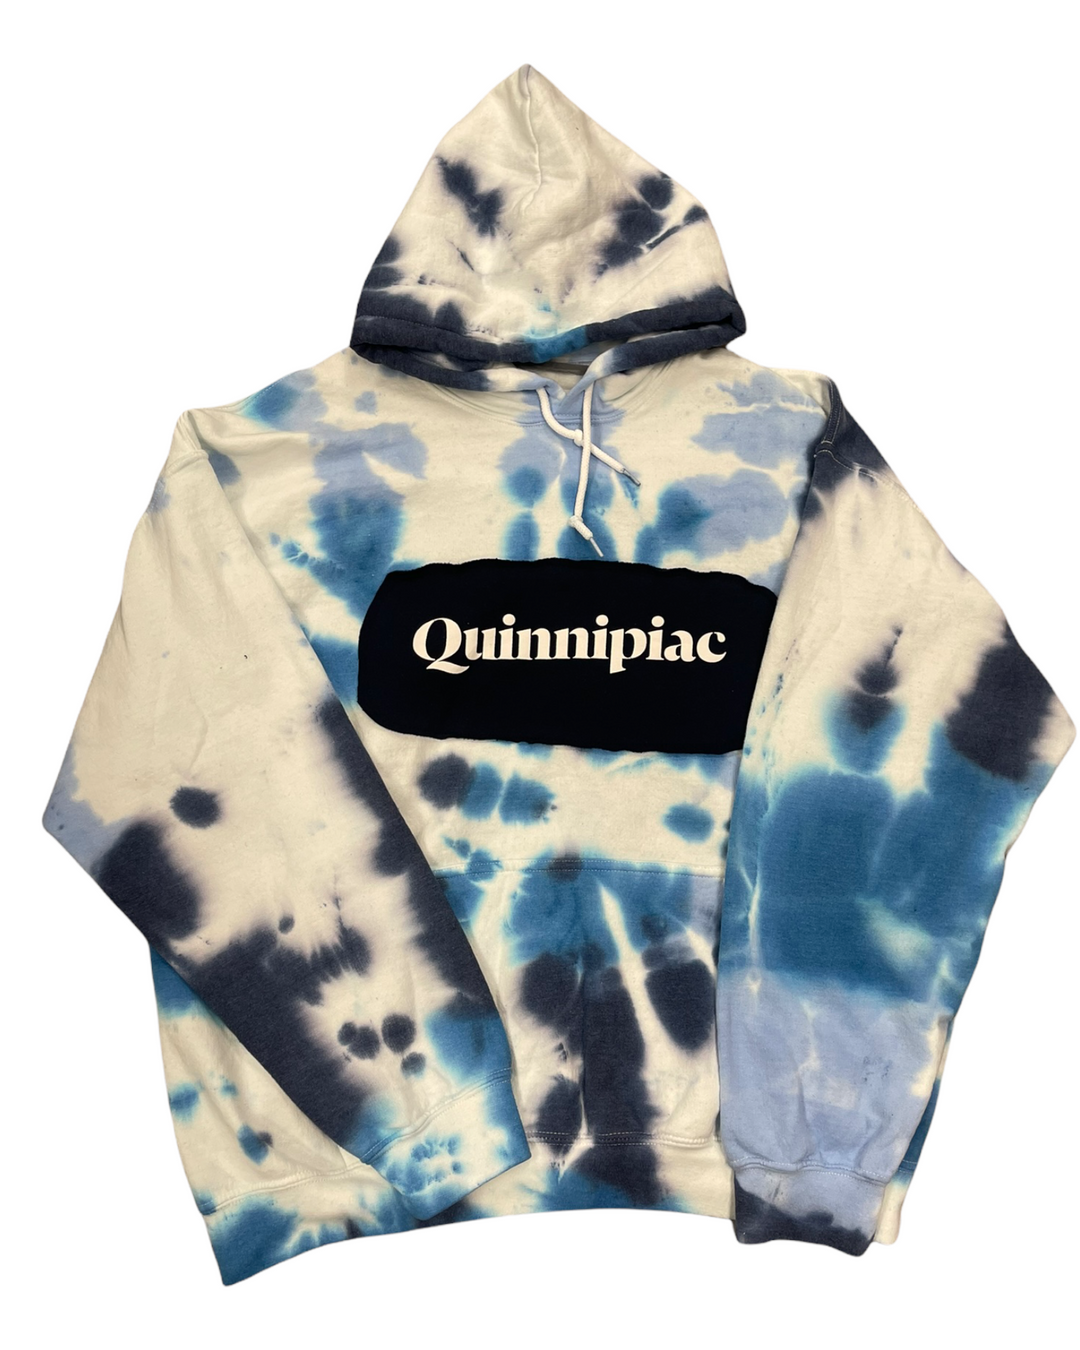 Quinnipiac Tie Dye Patched Sweatshirt